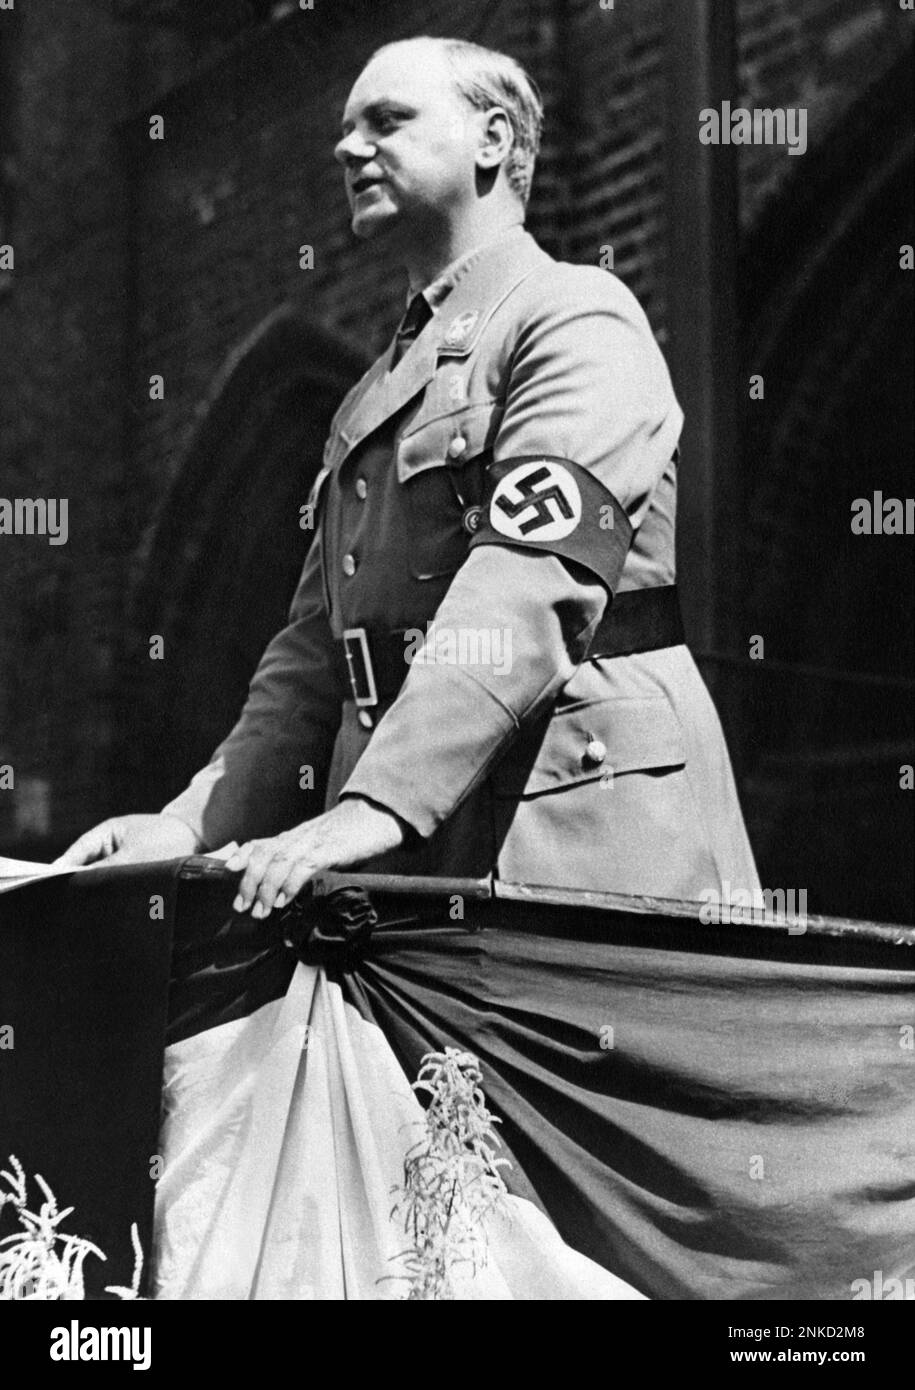 1935 CA , ALLEMAGNE : le nazi allemand ALFRED ROSENBERG ( 1893 - 1946 ) .était un membre du parti nazi au début et intellectuellement influent . Il est considéré comme l'un des principaux auteurs des croyances idéologiques nazies clés, y compris sa théorie raciale, la persécution des Juifs , Lebensraum, l'abrogation du Traité de Versailles et l'opposition à l'art moderne ' dégénéré ' . Il est également connu pour son rejet du christianisme . A Nuremberg, il a été jugé, condamné à mort et exécuté par pendaison comme criminel de guerre - Seconde Guerre mondiale - NAZI - NAZIST - SECONDA GUERRA MONDIALE - NAZISMO - NAZISTA - POLITICA - POLITIQUE Banque D'Images